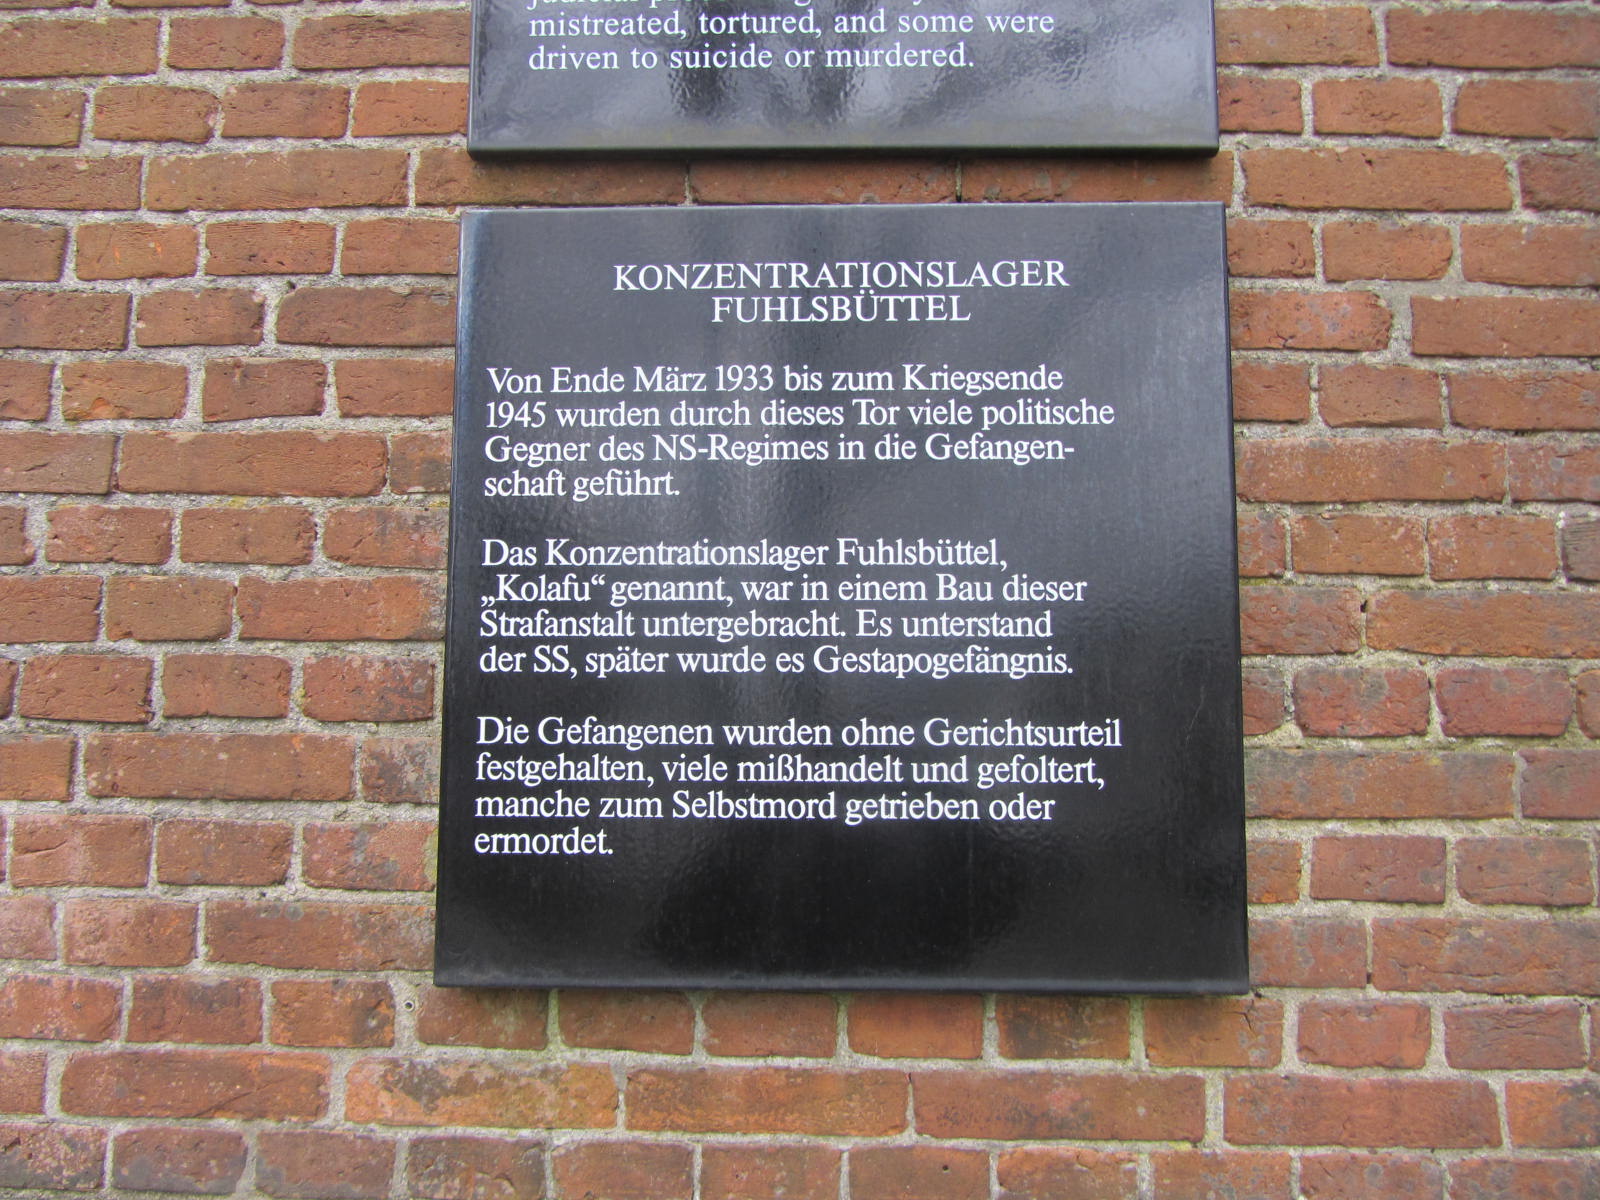 Gedenkstätte Konzentrationslager und Strafanstalten Fuhlsbüttel 1933-1945 in Suhrenkamp 98 22335 Hamburg-Ohlsdorf